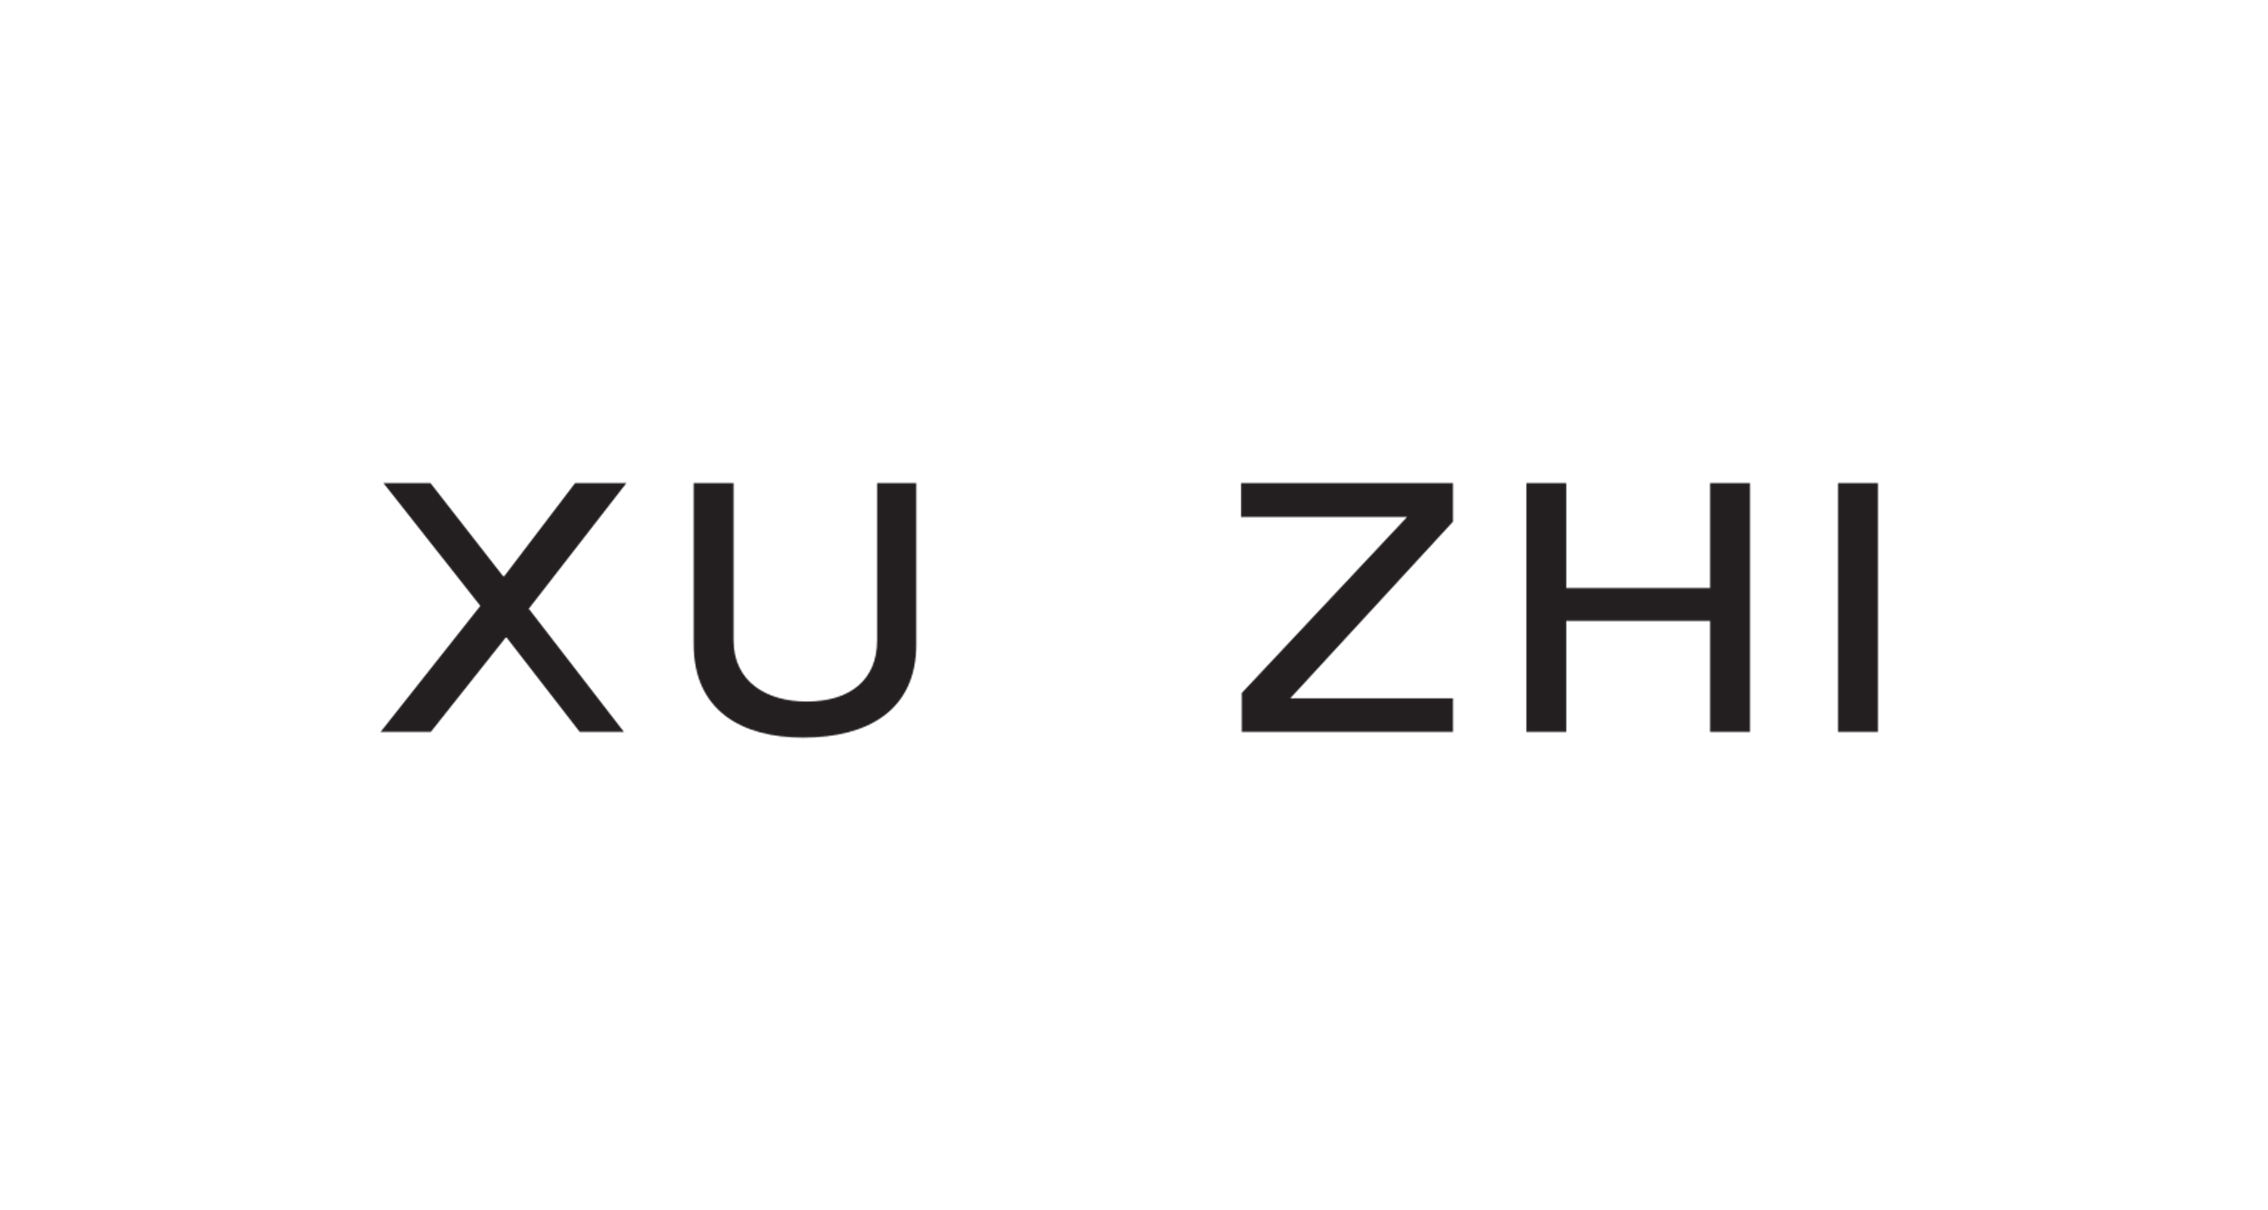 Xu Zhi